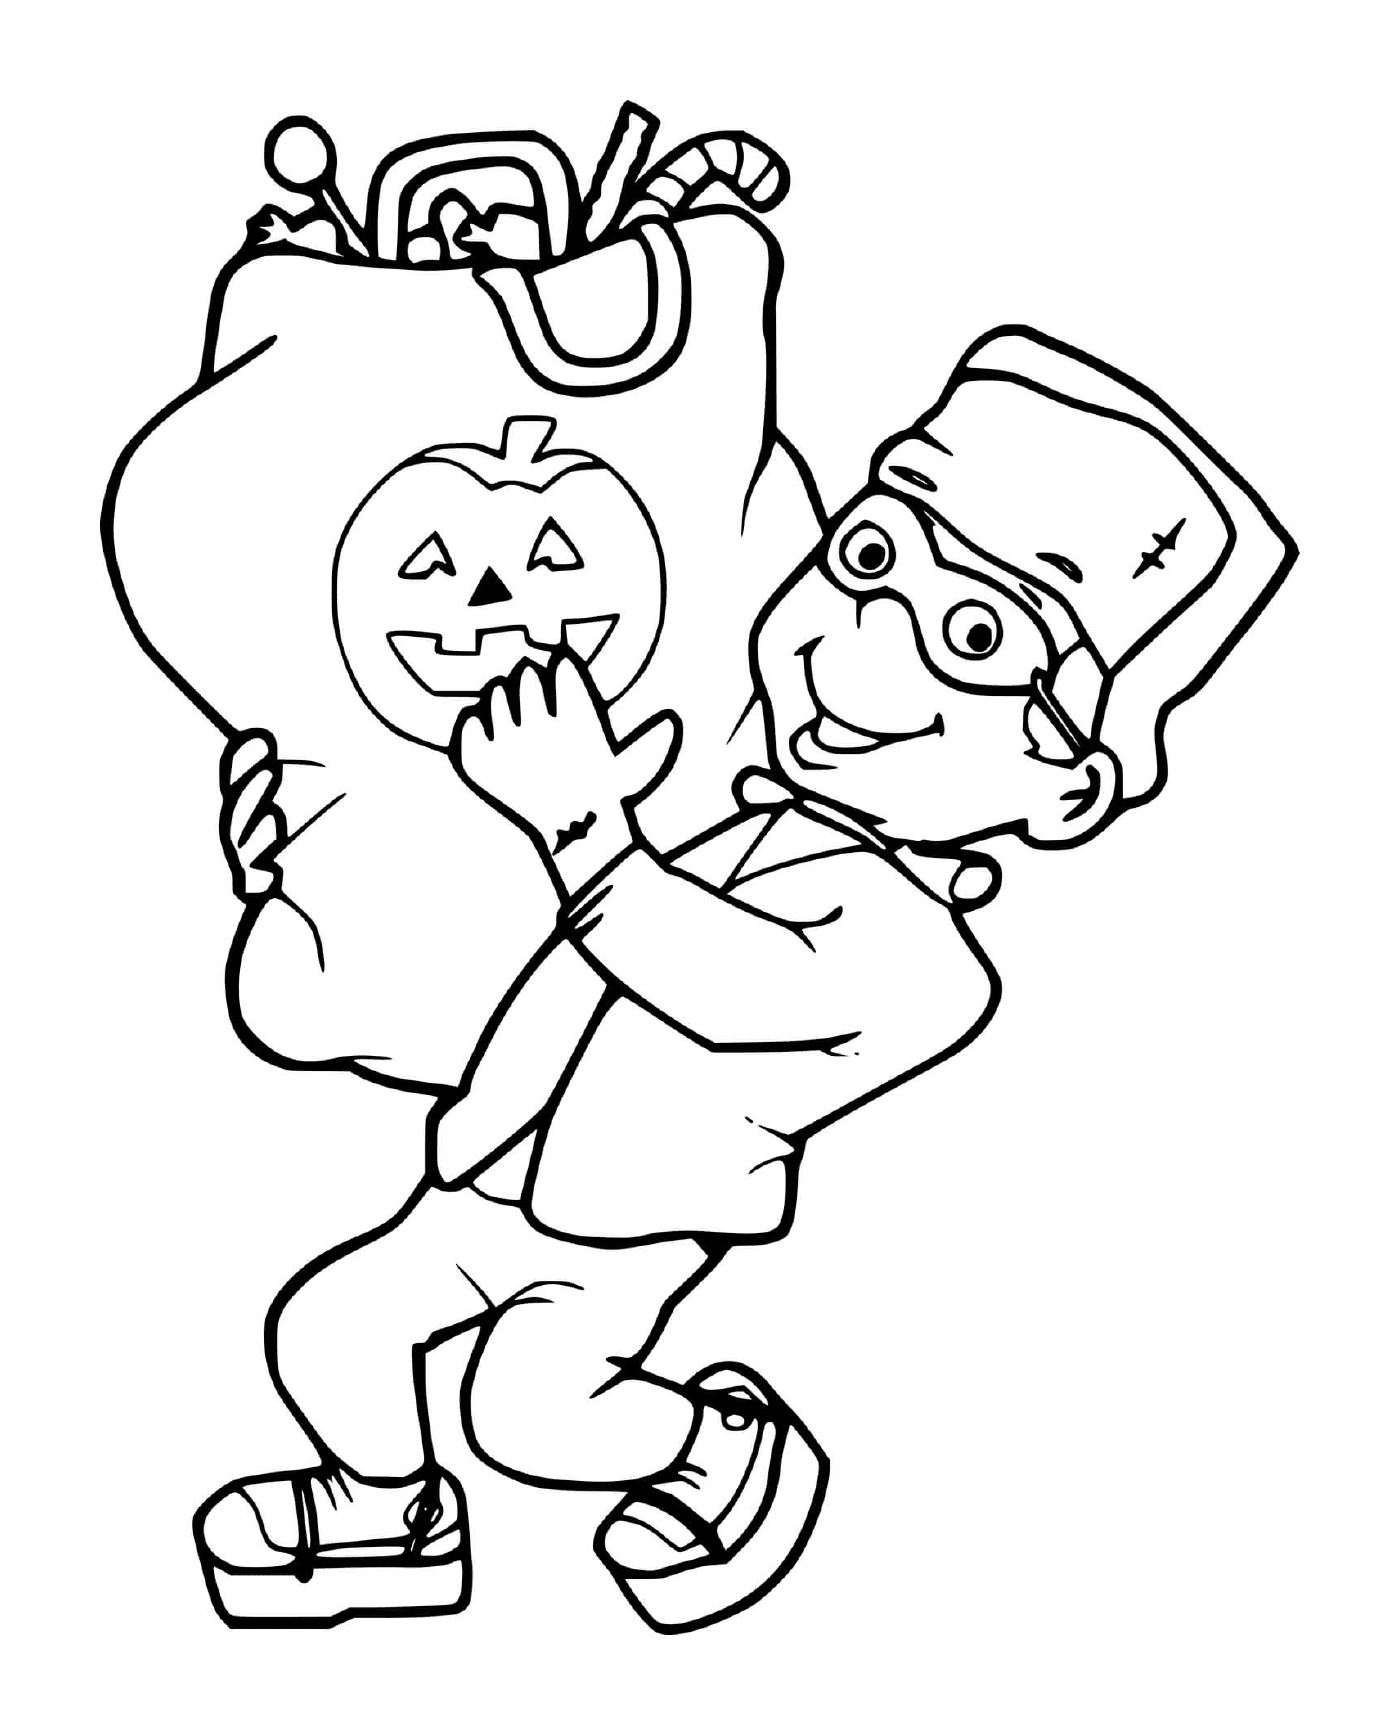  Bambino con un costume Frankenstein raccoglie una grande borsa di dolci di Halloween 